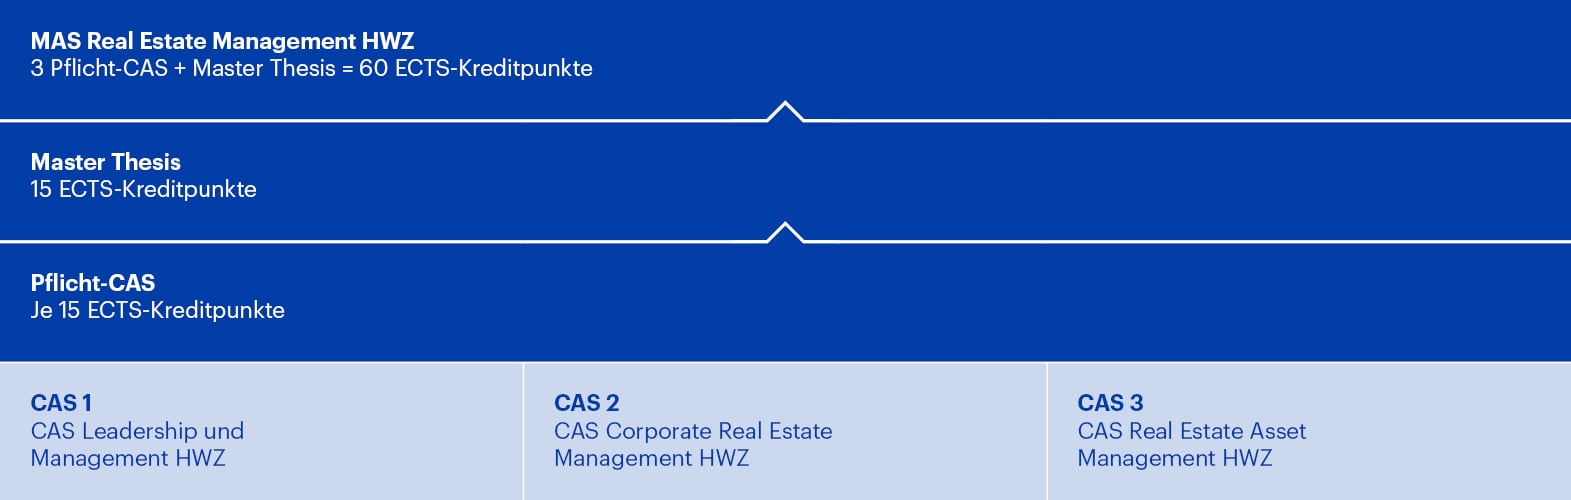 Aufbau Weiterbildung MAS Real Estate Management HWZ